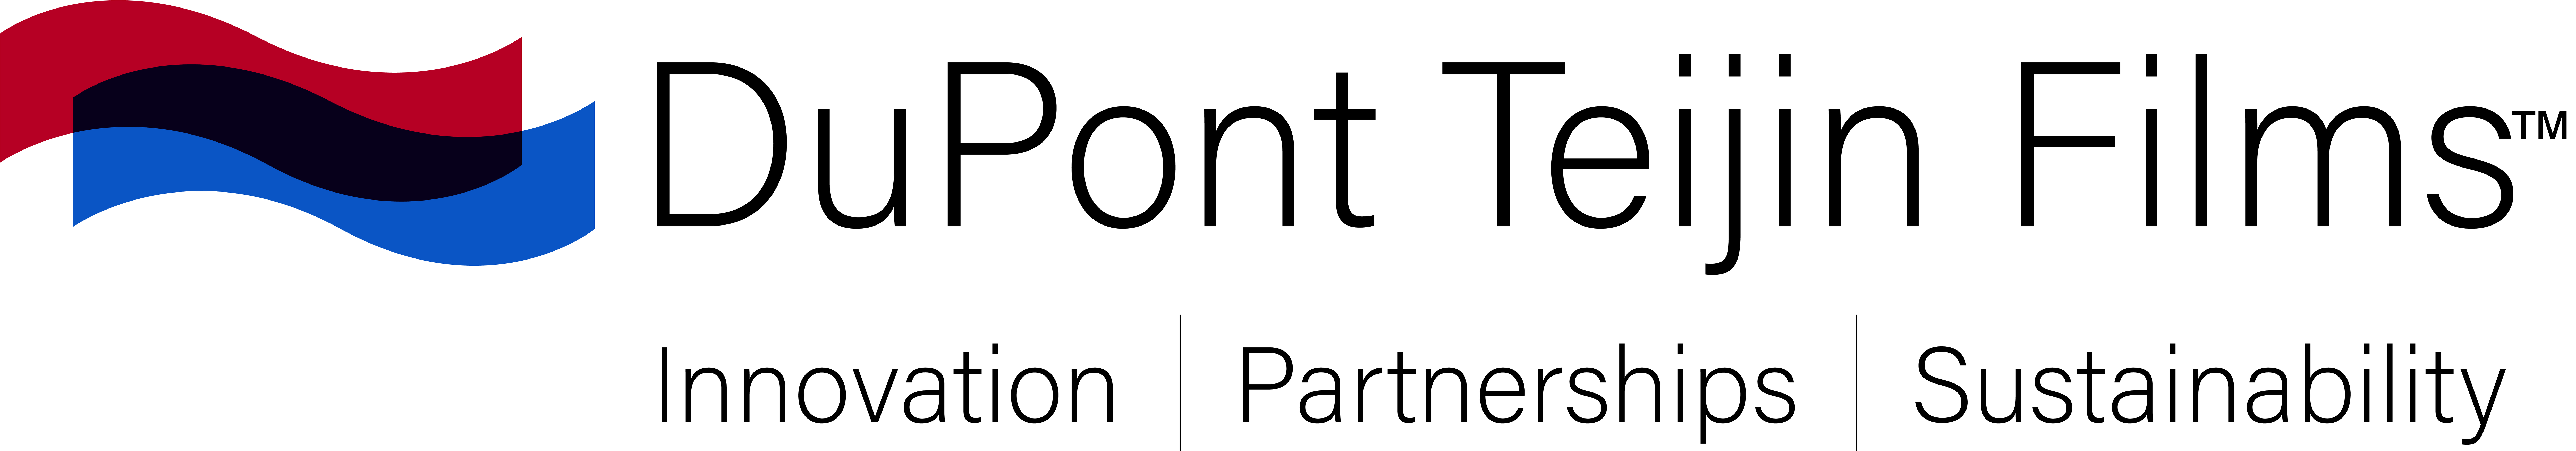 DuPont Teijin Films logo